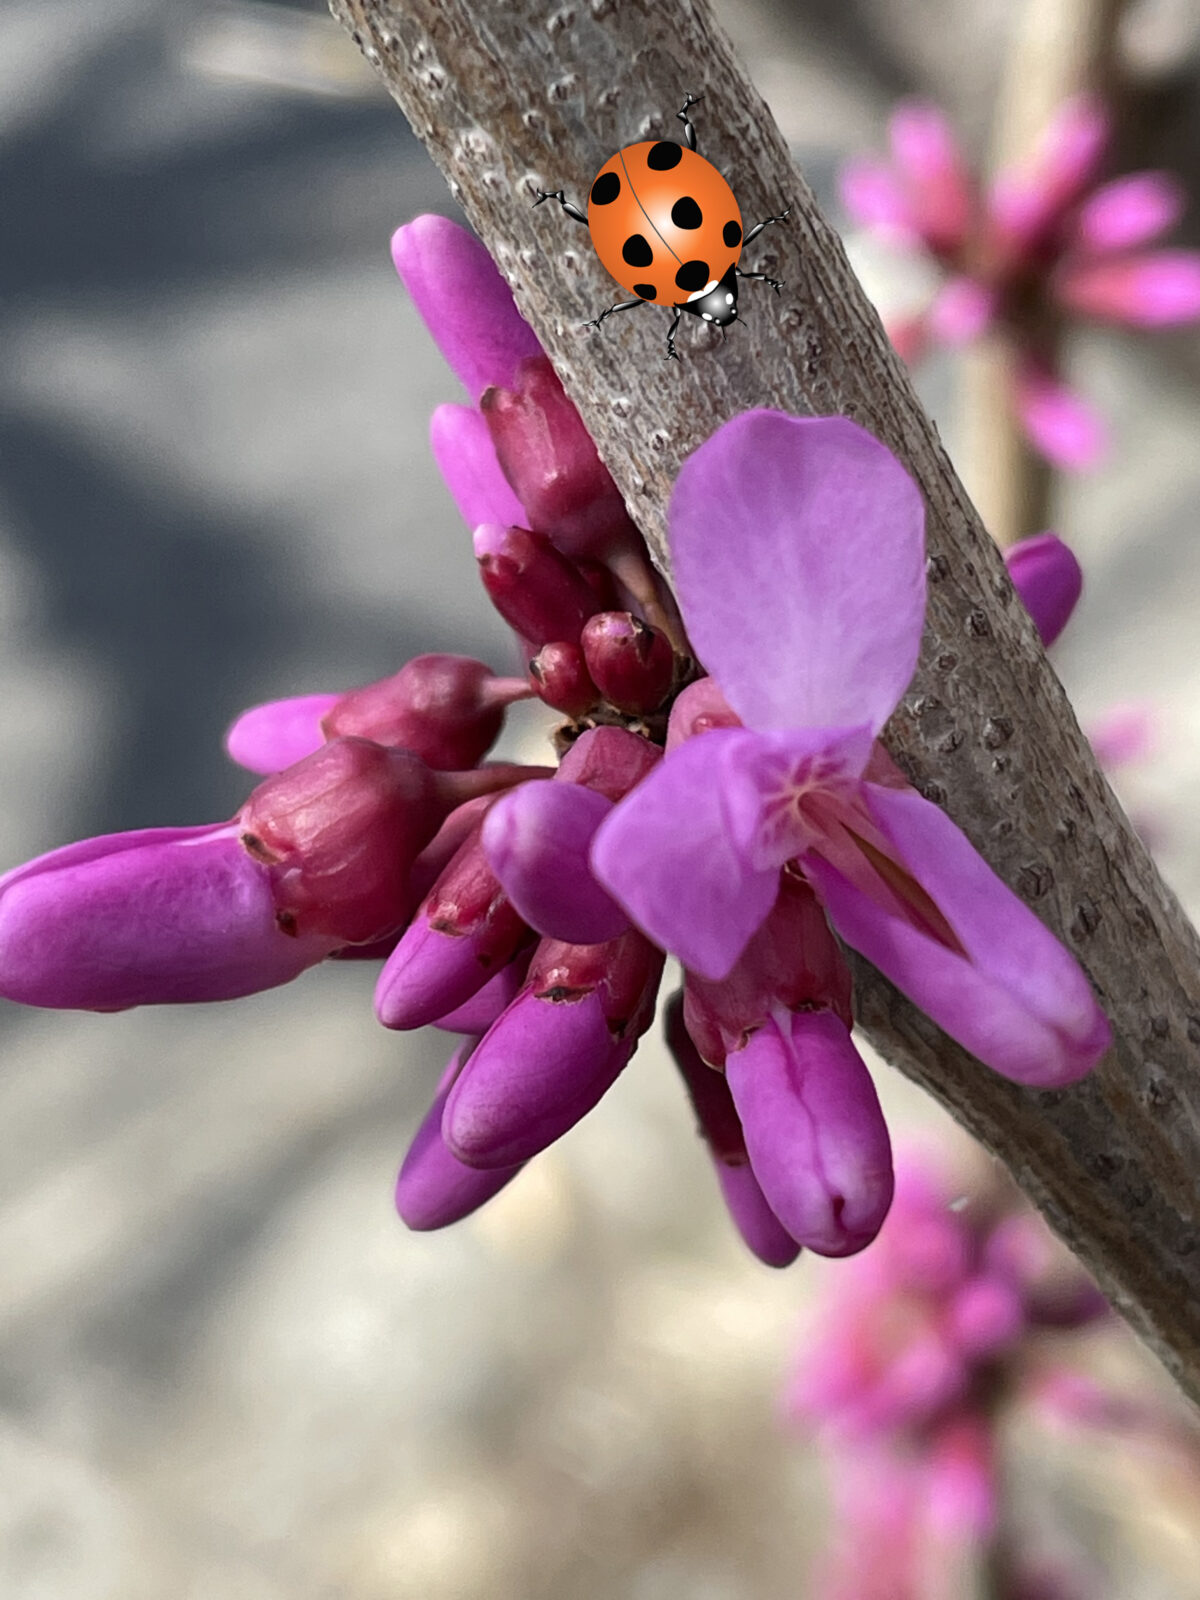 ハナズオウ 花弁の色がスオウ 蘇芳 で染めた色に似ていることから名づけられたそうです